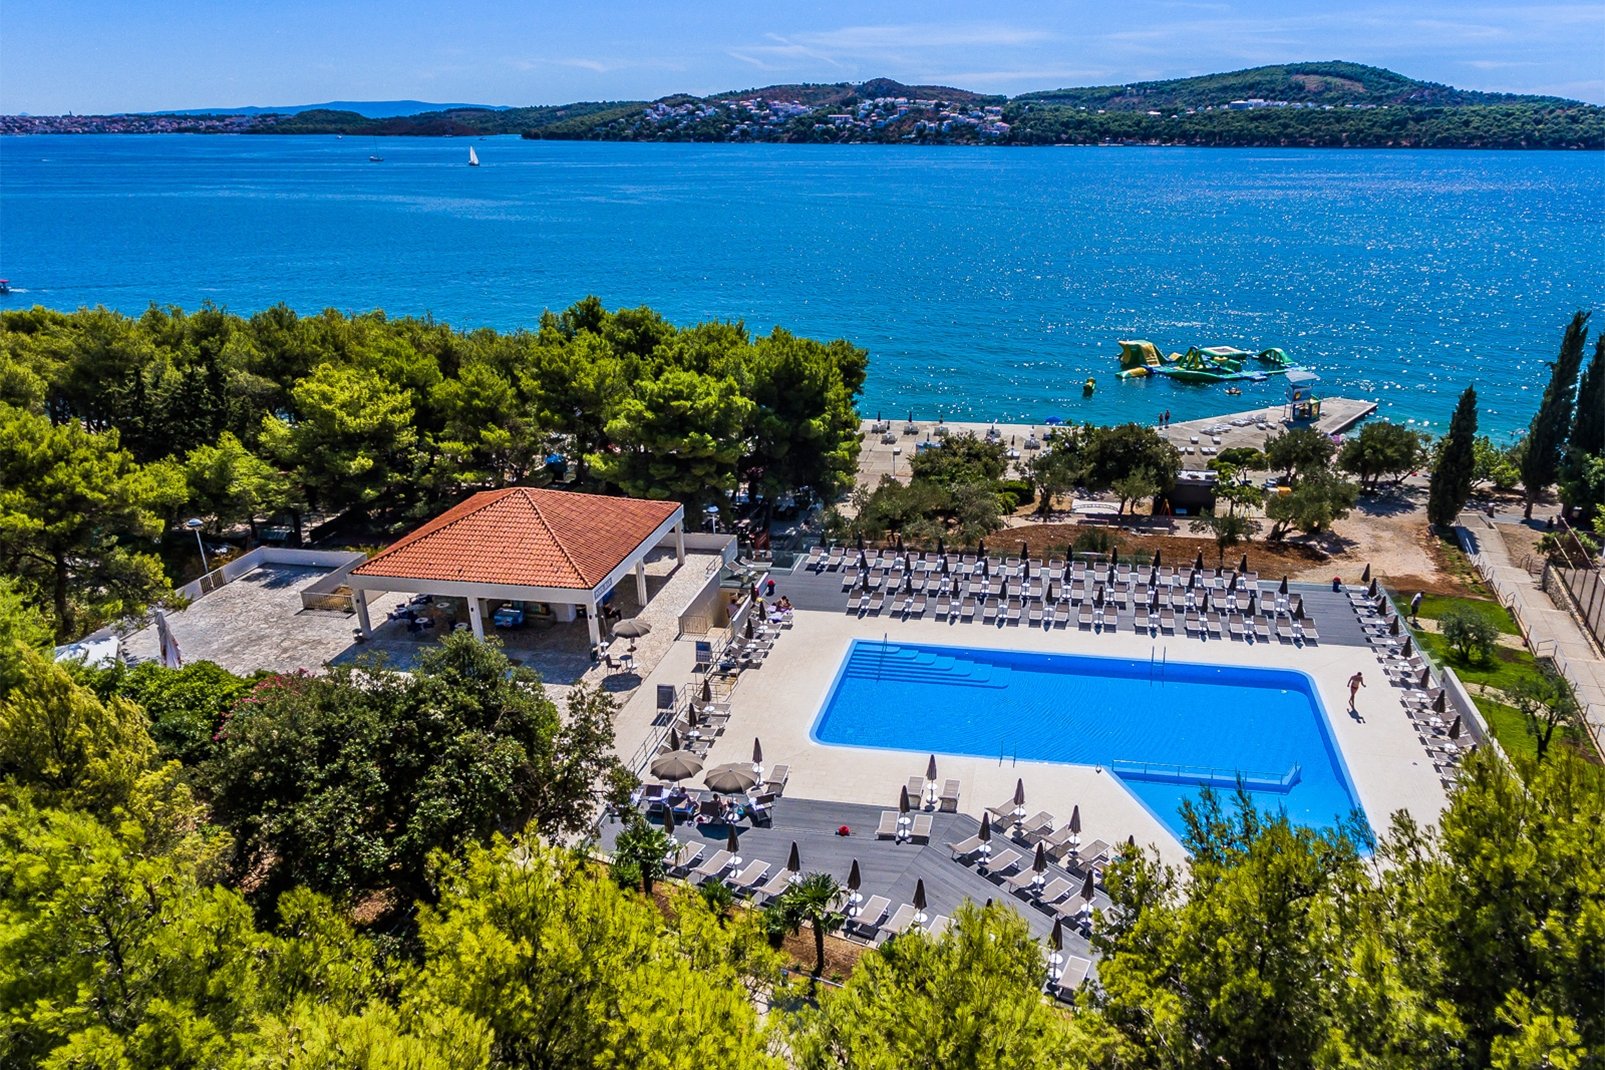 Vacances en Croatie, des séjours 8j/7n à partir de 518€/pers tout compris avec vol inclus